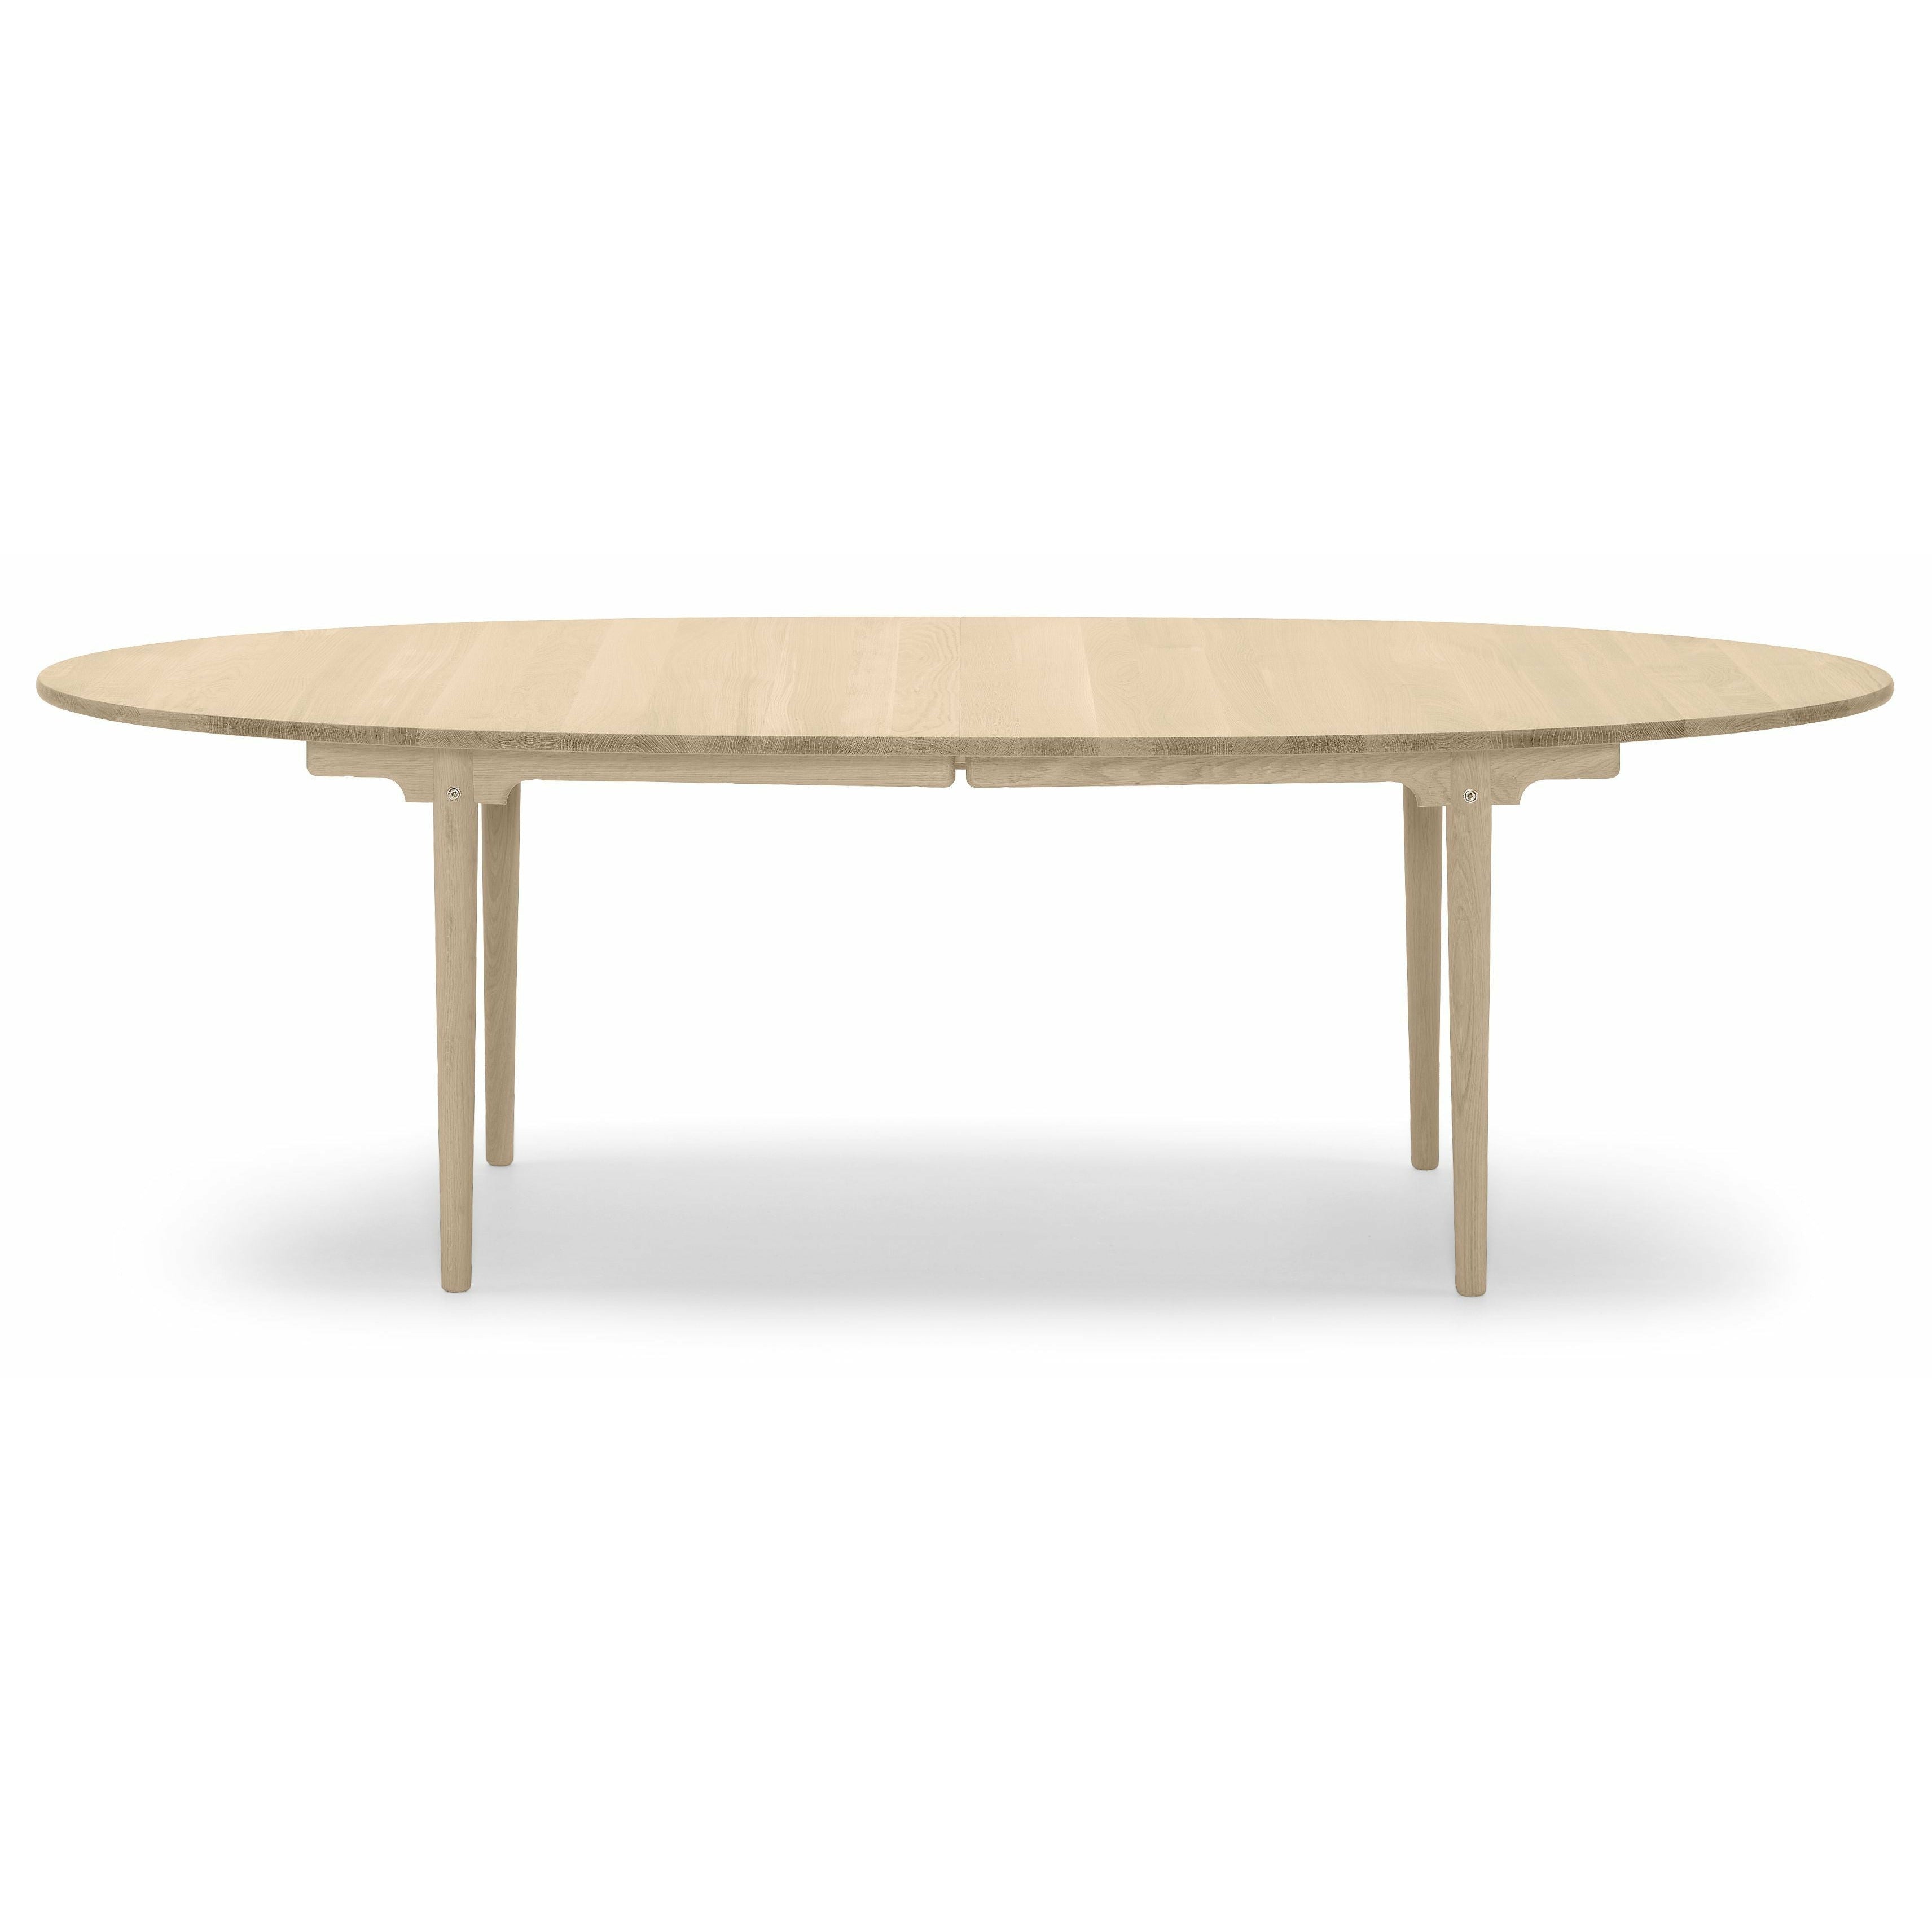 Carl Hansen CH339 matbord designat för 4 utdragbara plattor, ekoljad